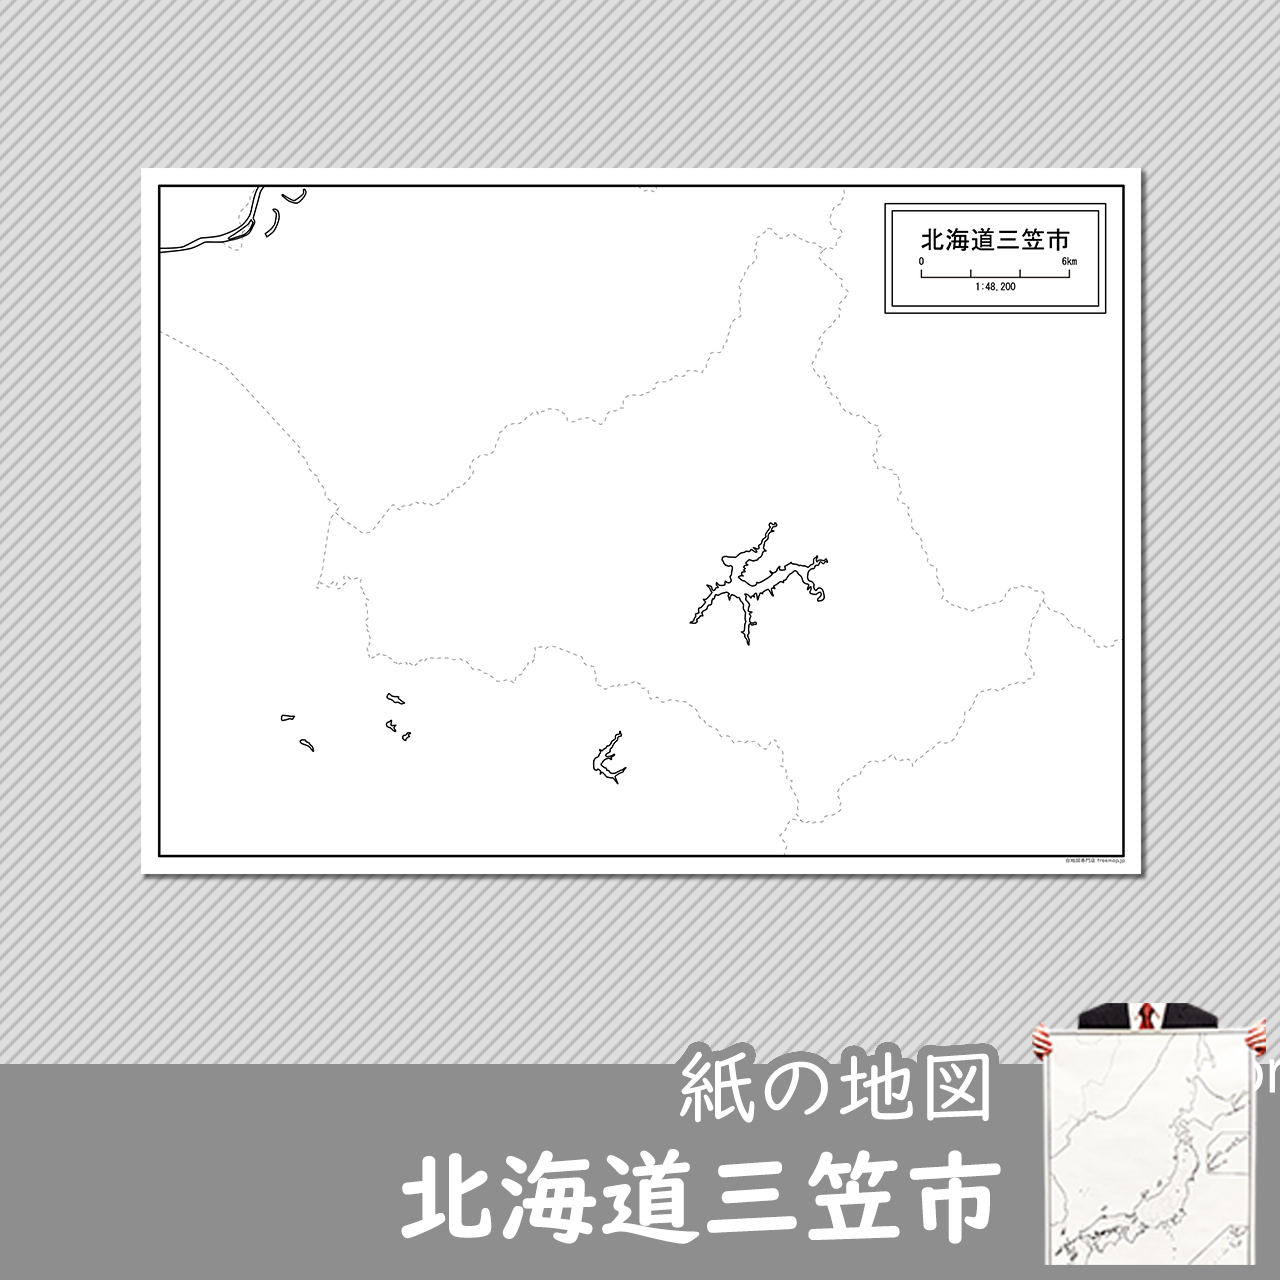 三笠市の紙の白地図のサムネイル